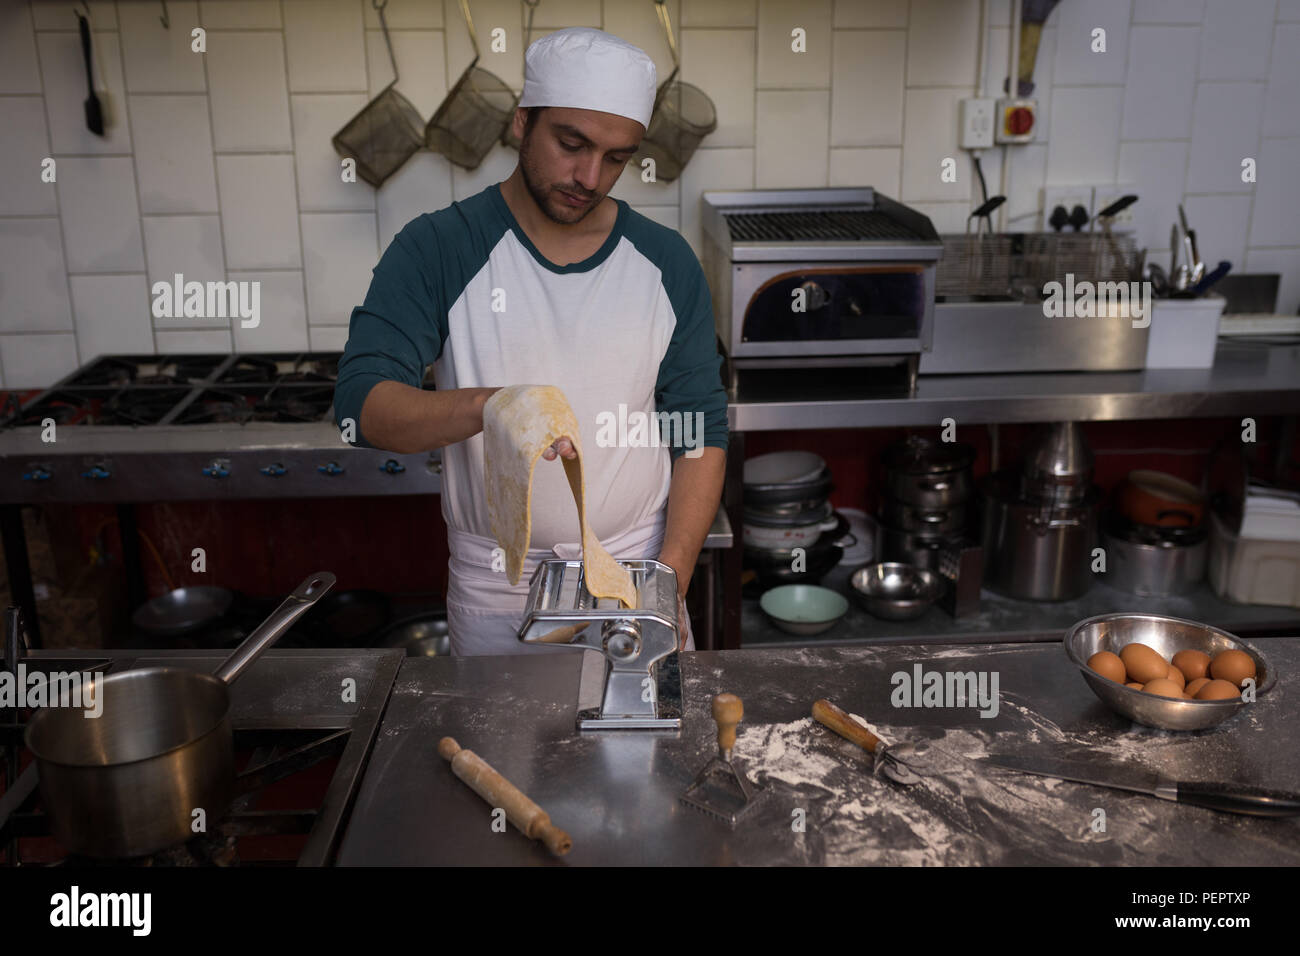 Baker using machine for preparing pasta Stock Photo